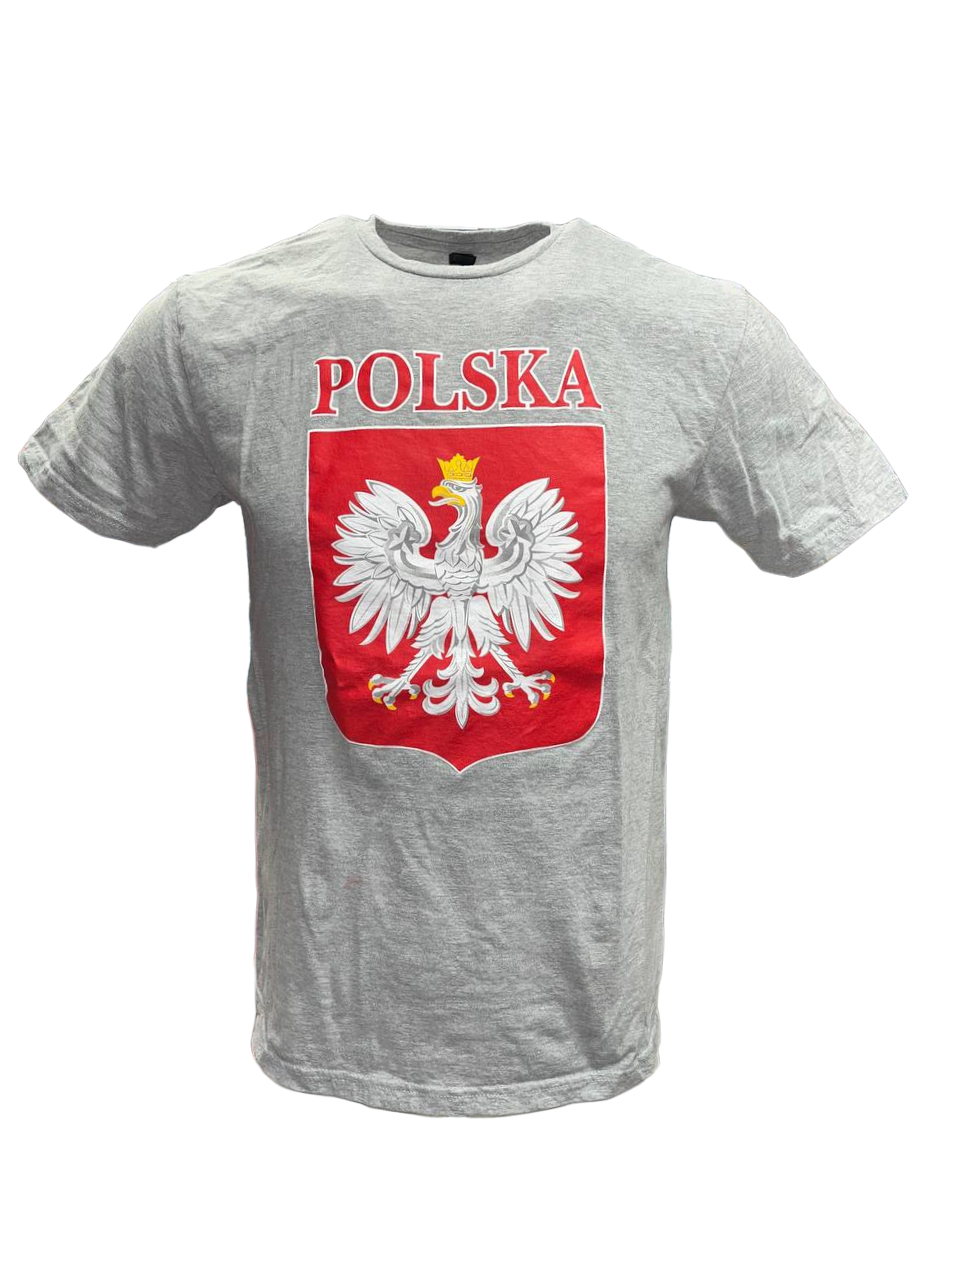 Bulk of Polish Men's Polska Printed Eagle Crest T-Shirt - Gray 12 Pack